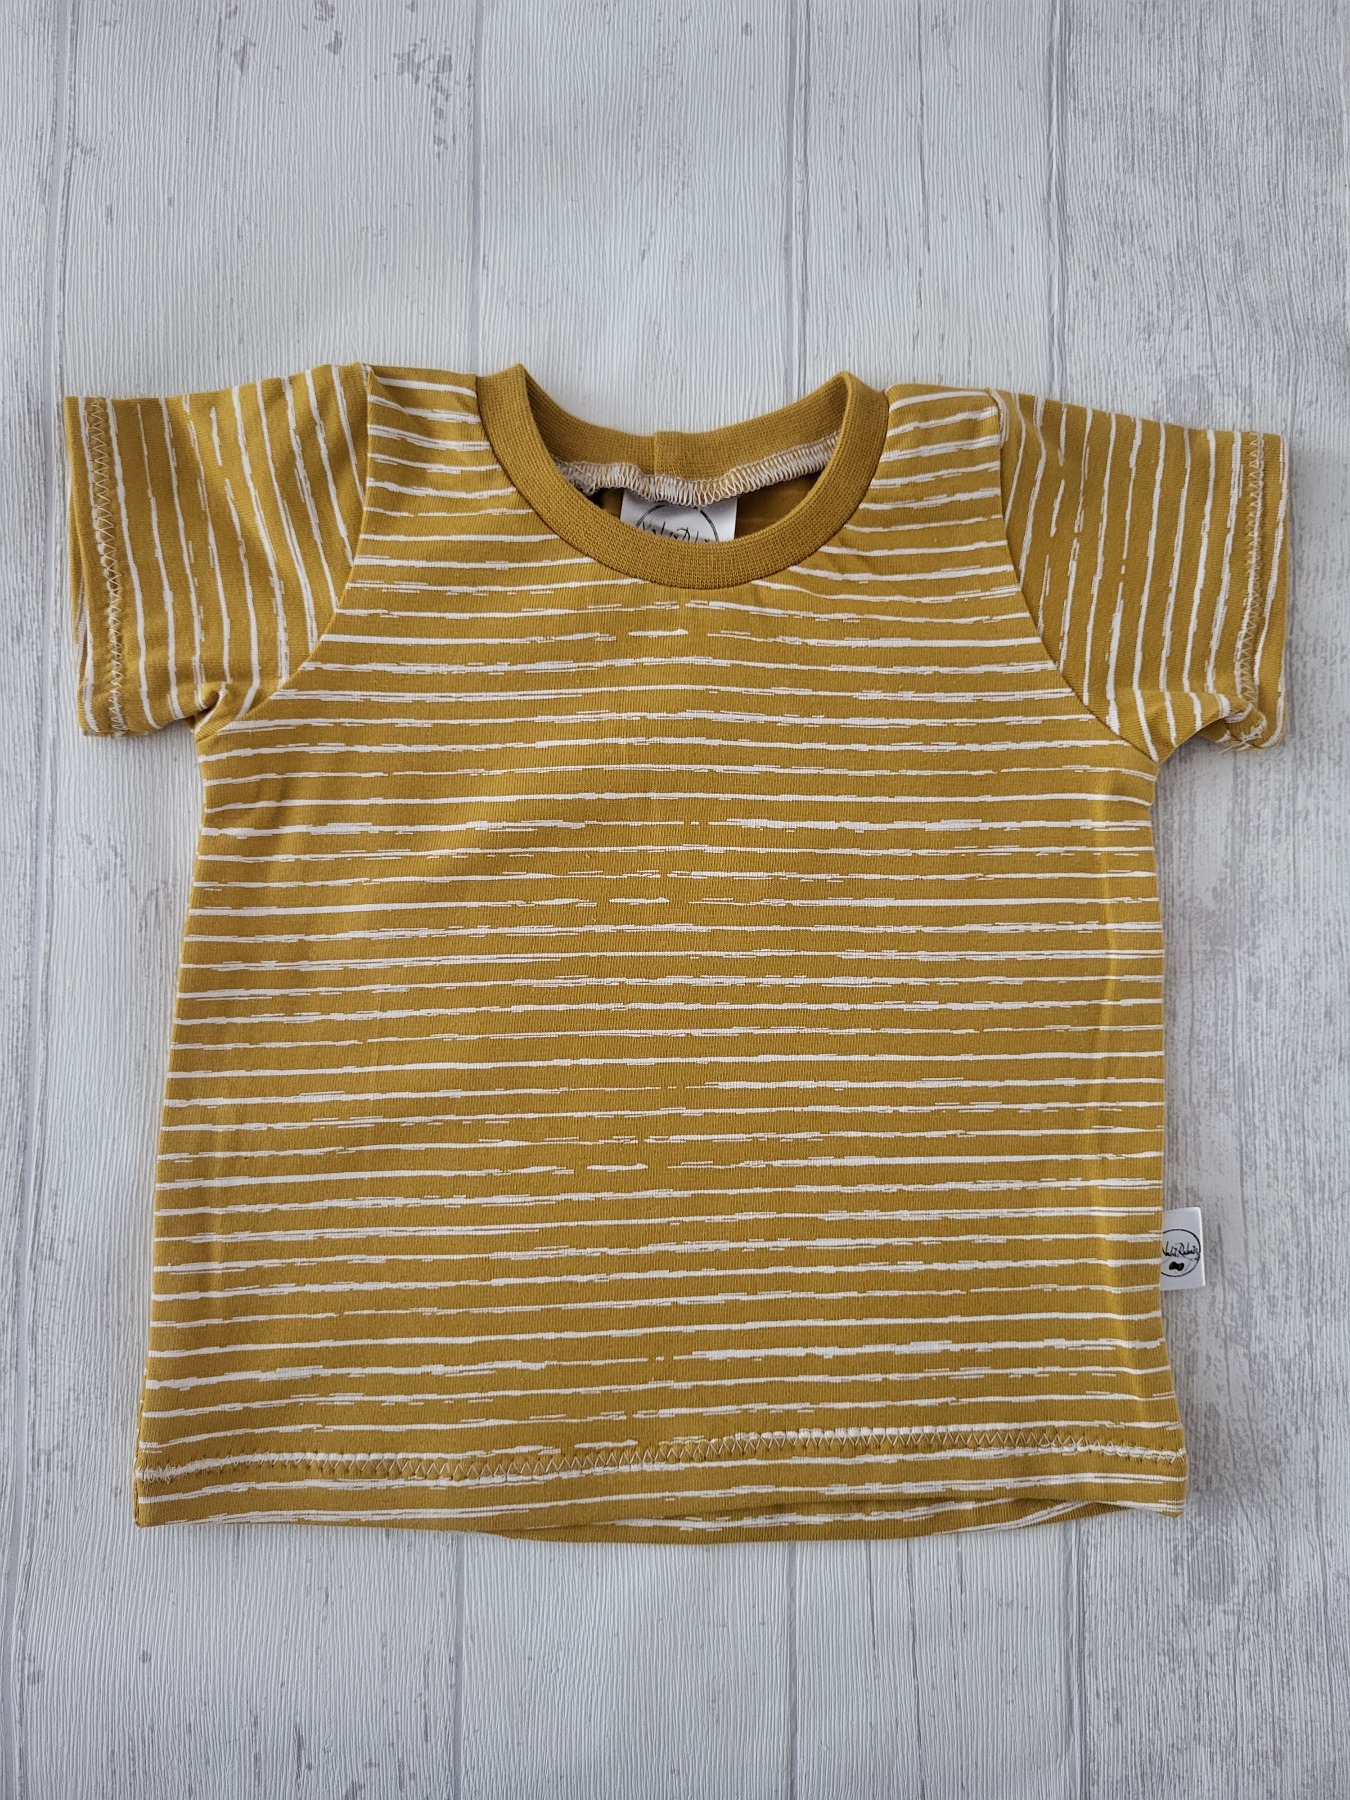 Sofortkauf Handmade T-Shirt kurzarm Streifen senf Gr. 68 von NahtRabatz